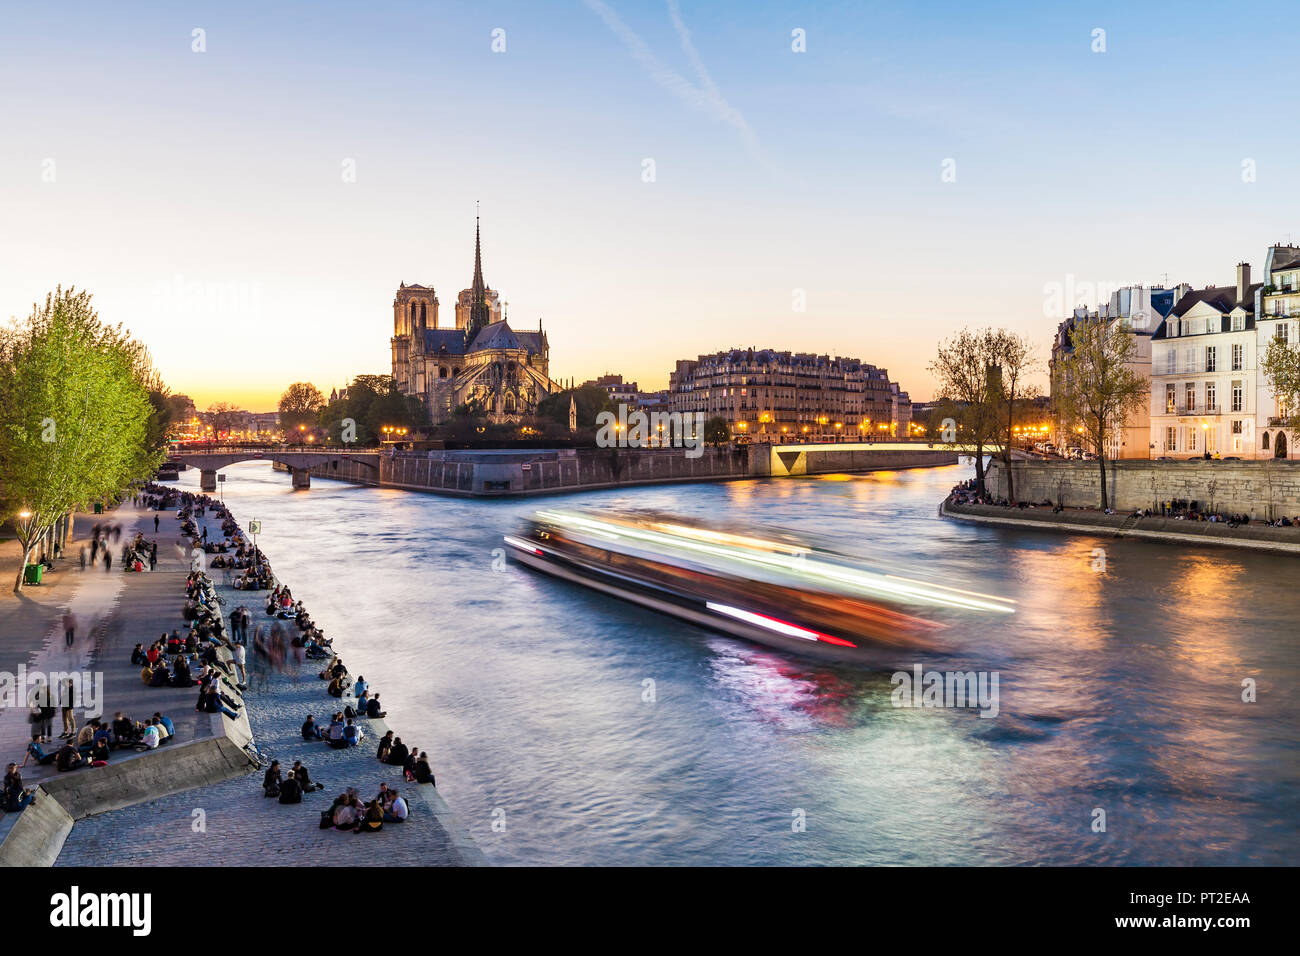 Francia, Parigi, la barca turistica sul fiume Senna con la cattedrale di Notre Dame in background Foto Stock